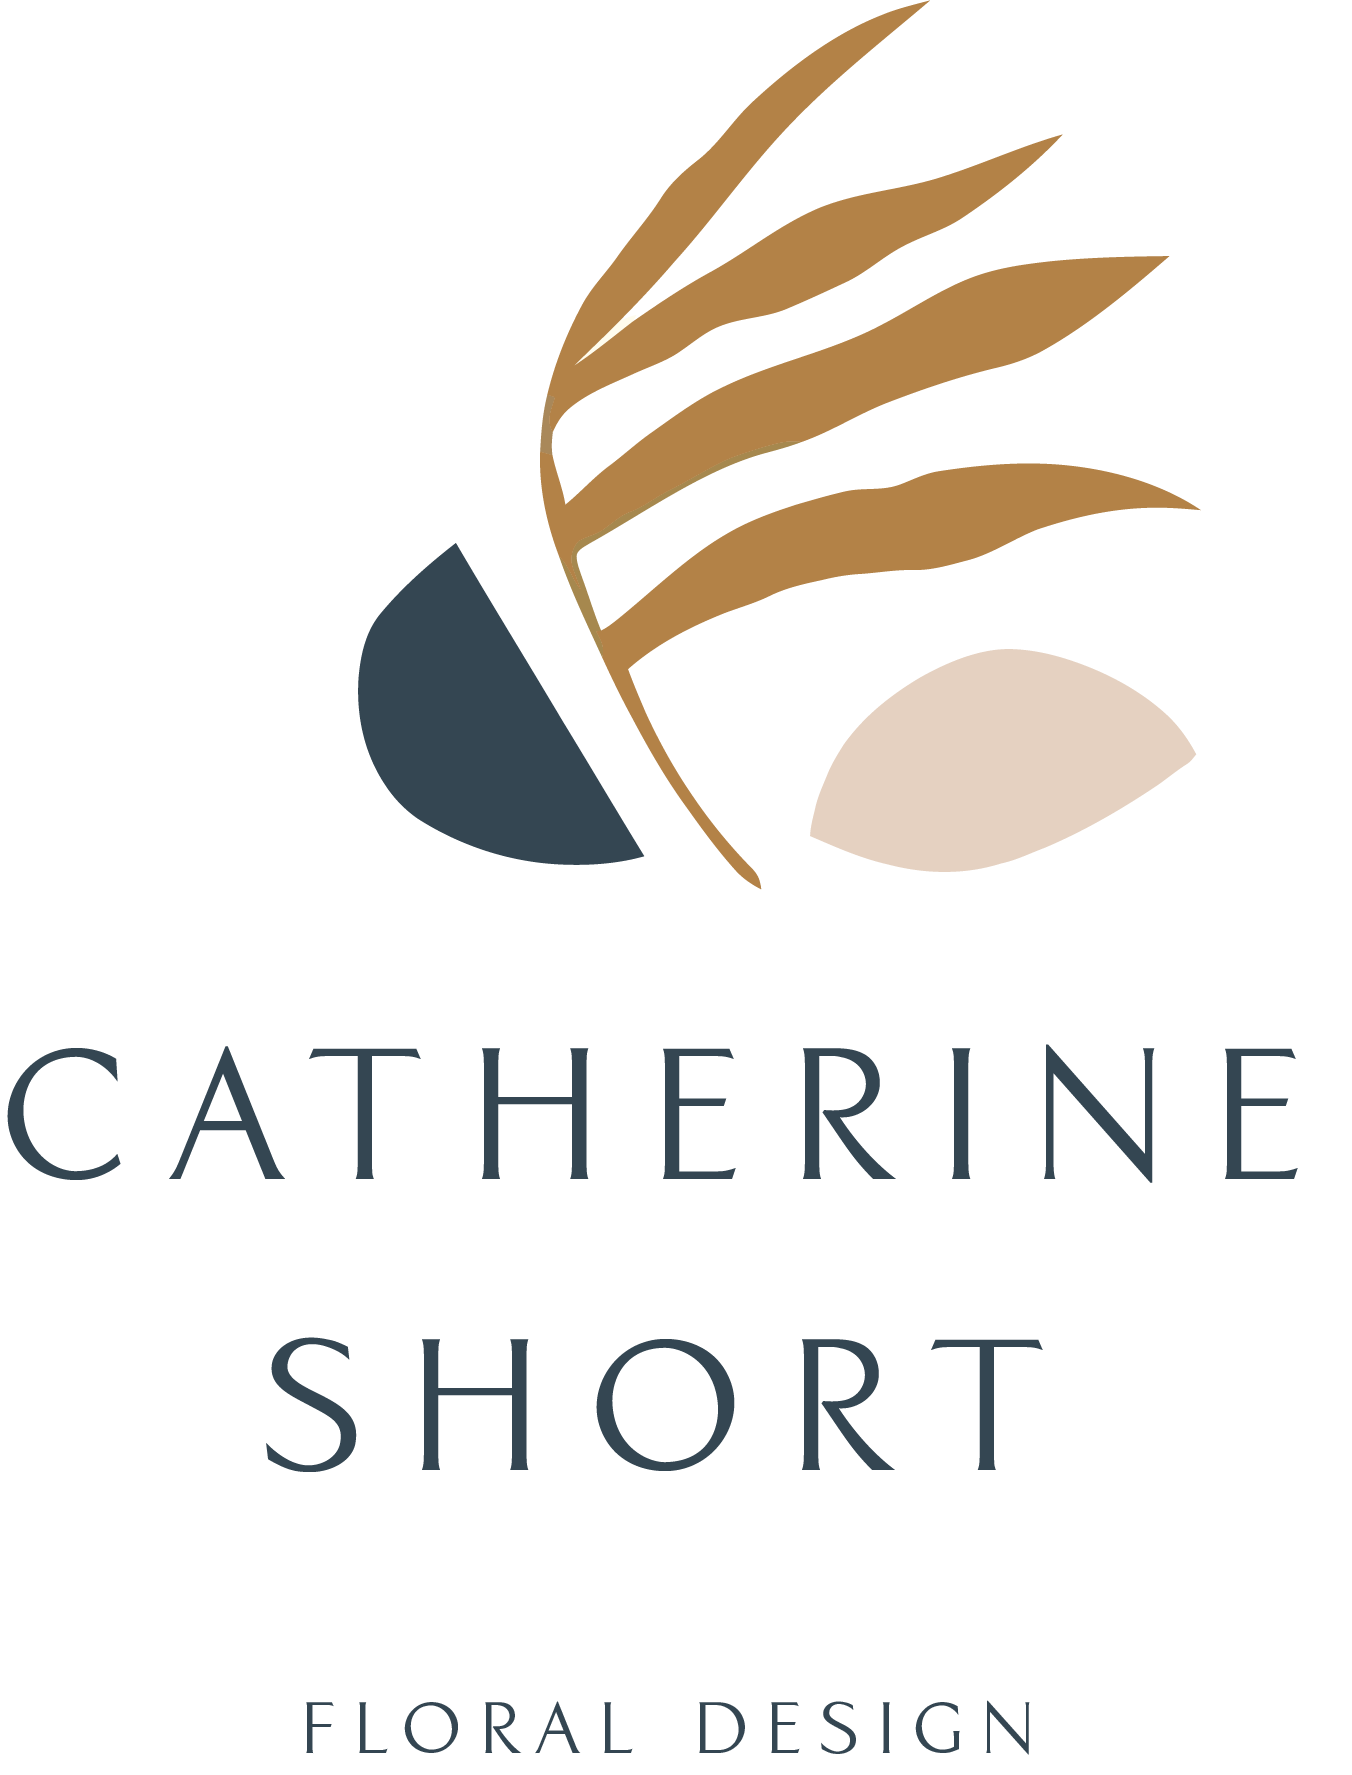 Catherine Short Floral Design